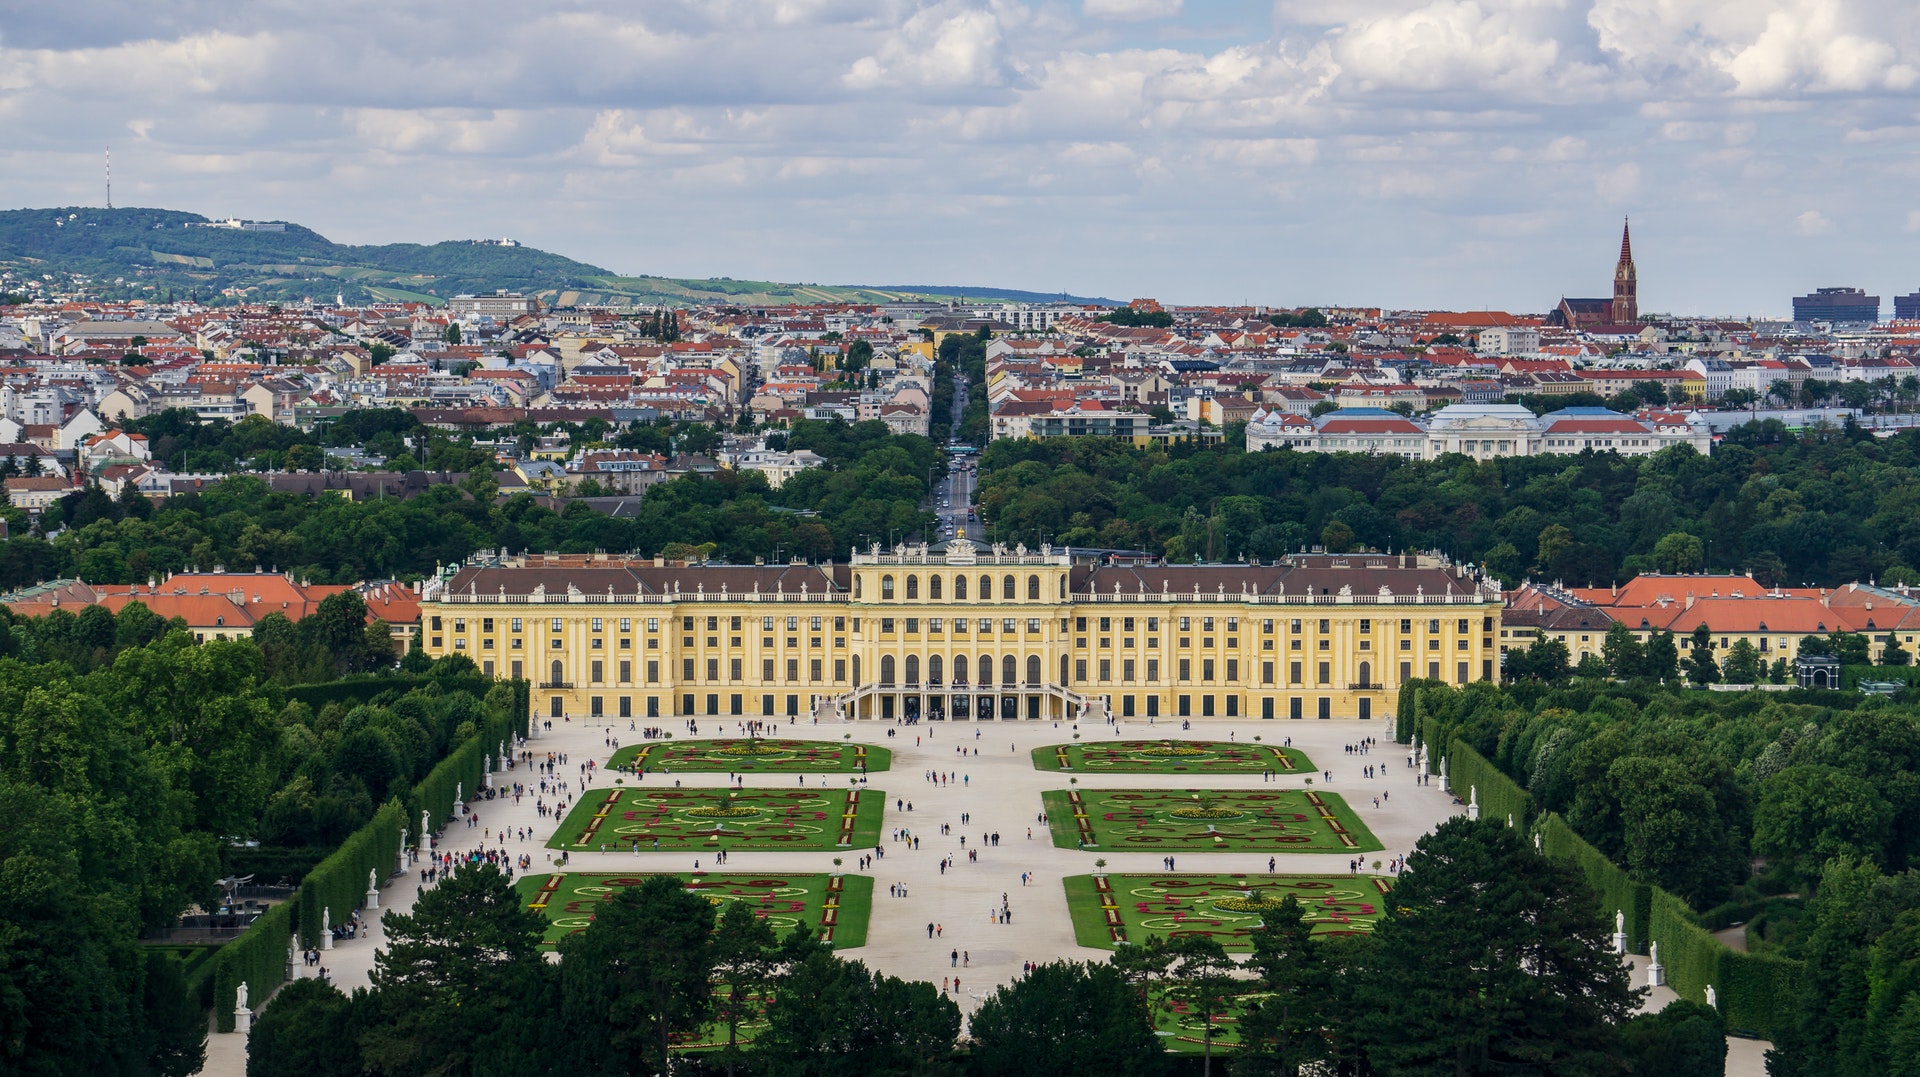 Admirez les divers bâtiments importants de Vienne